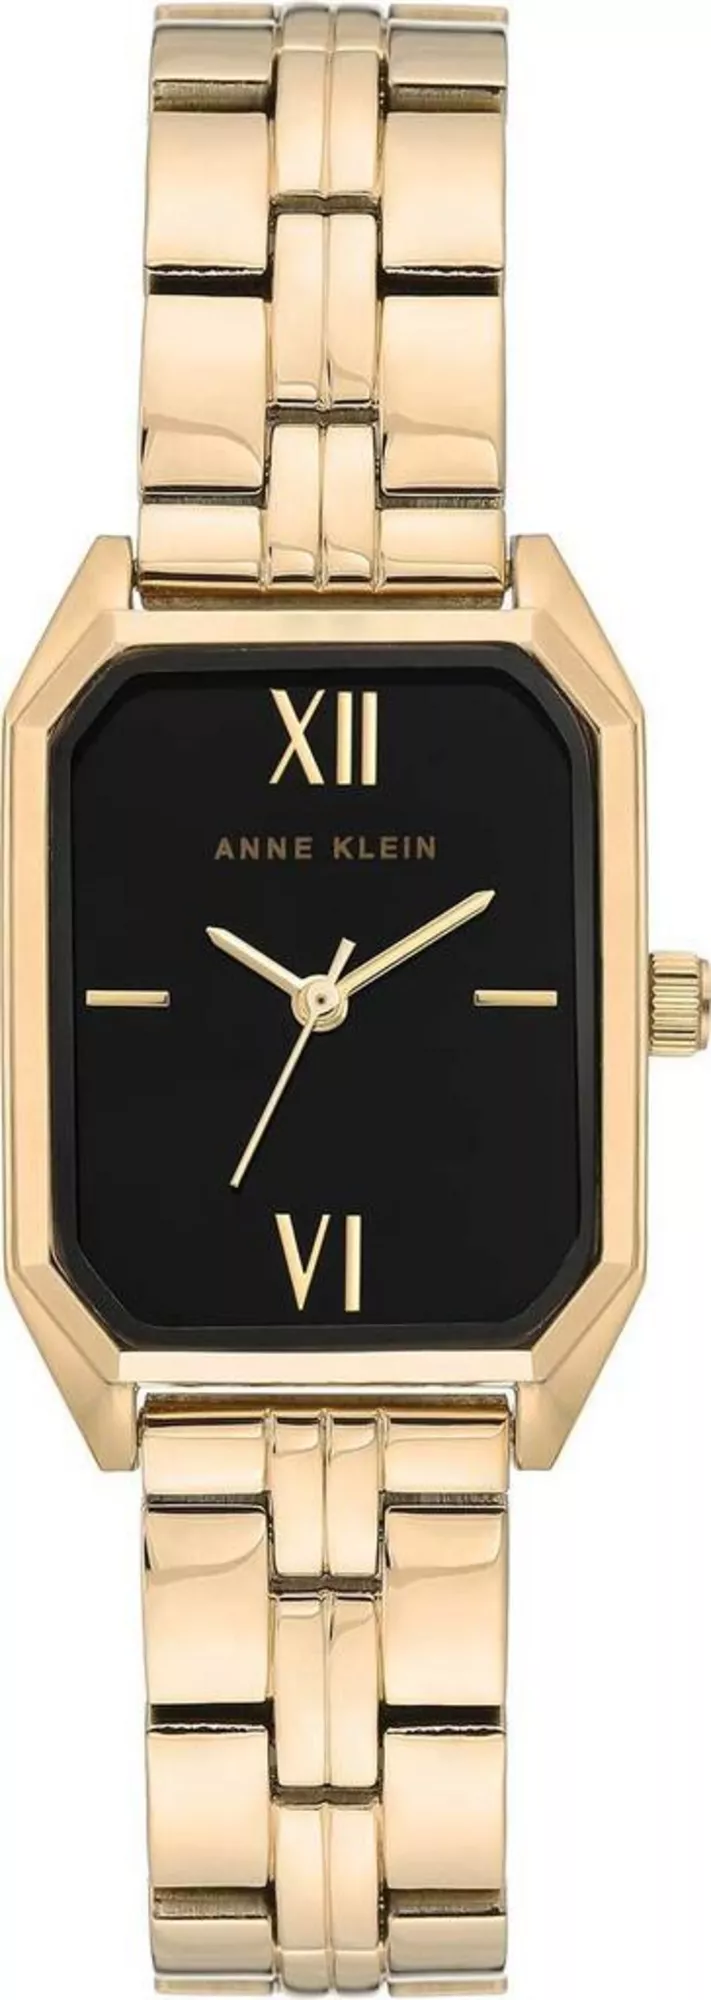 Часы Anne Klein AK3774BKGB